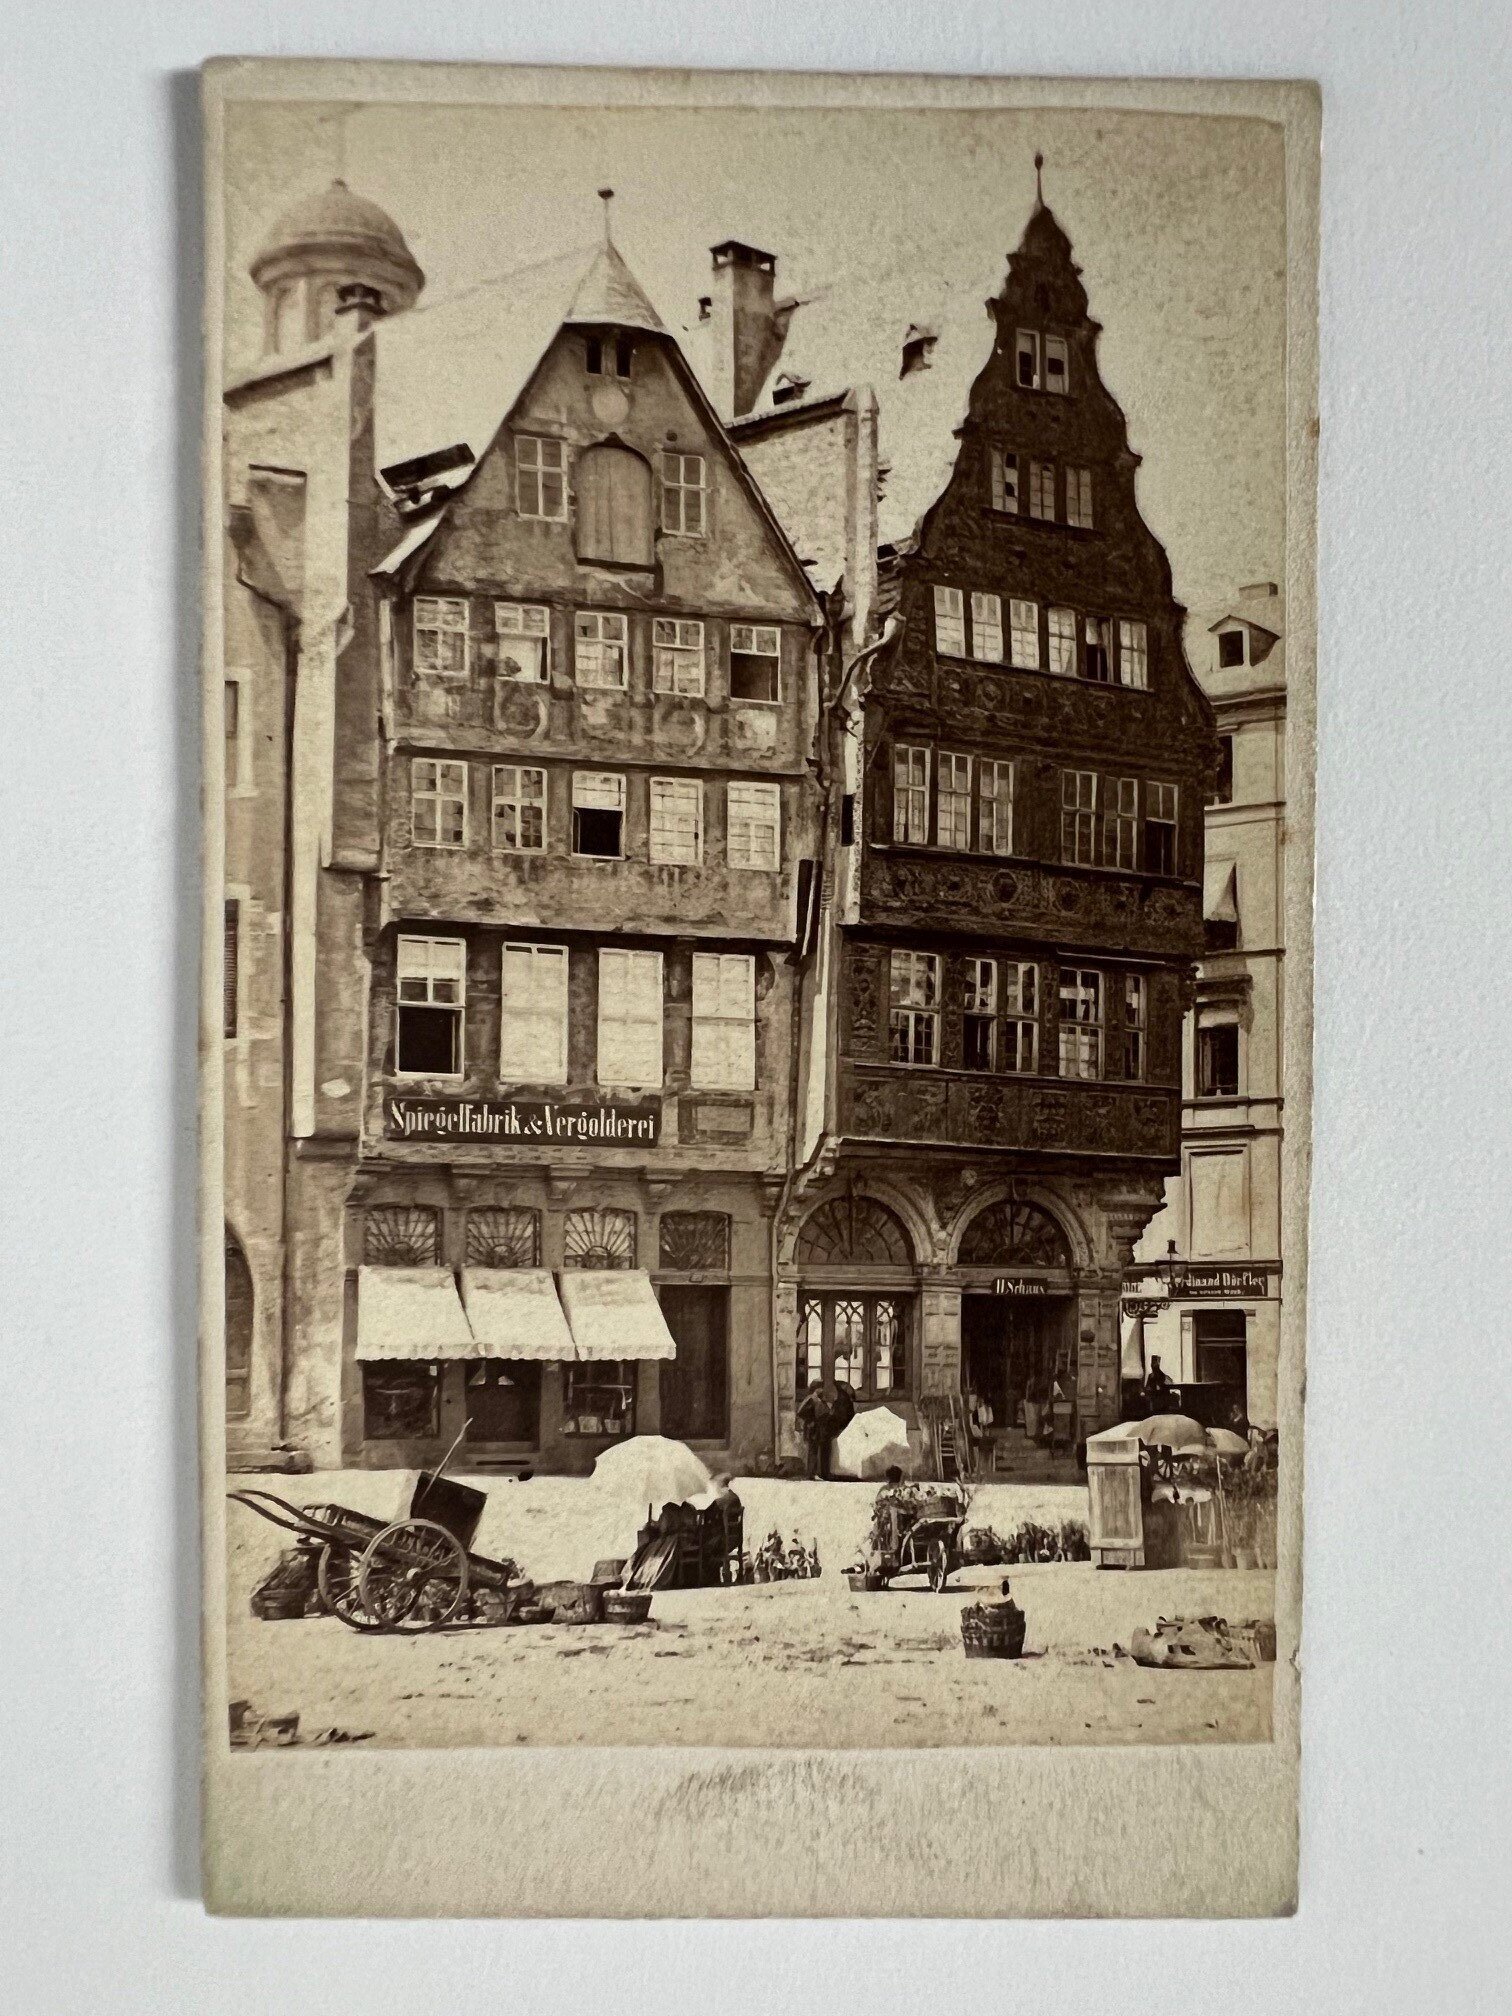 CdV, Theodor Creifelds, Frankfurt, Nr. 275, Alte Häuser beim Römer, ca. 1870. (Taunus-Rhein-Main - Regionalgeschichtliche Sammlung Dr. Stefan Naas CC BY-NC-SA)